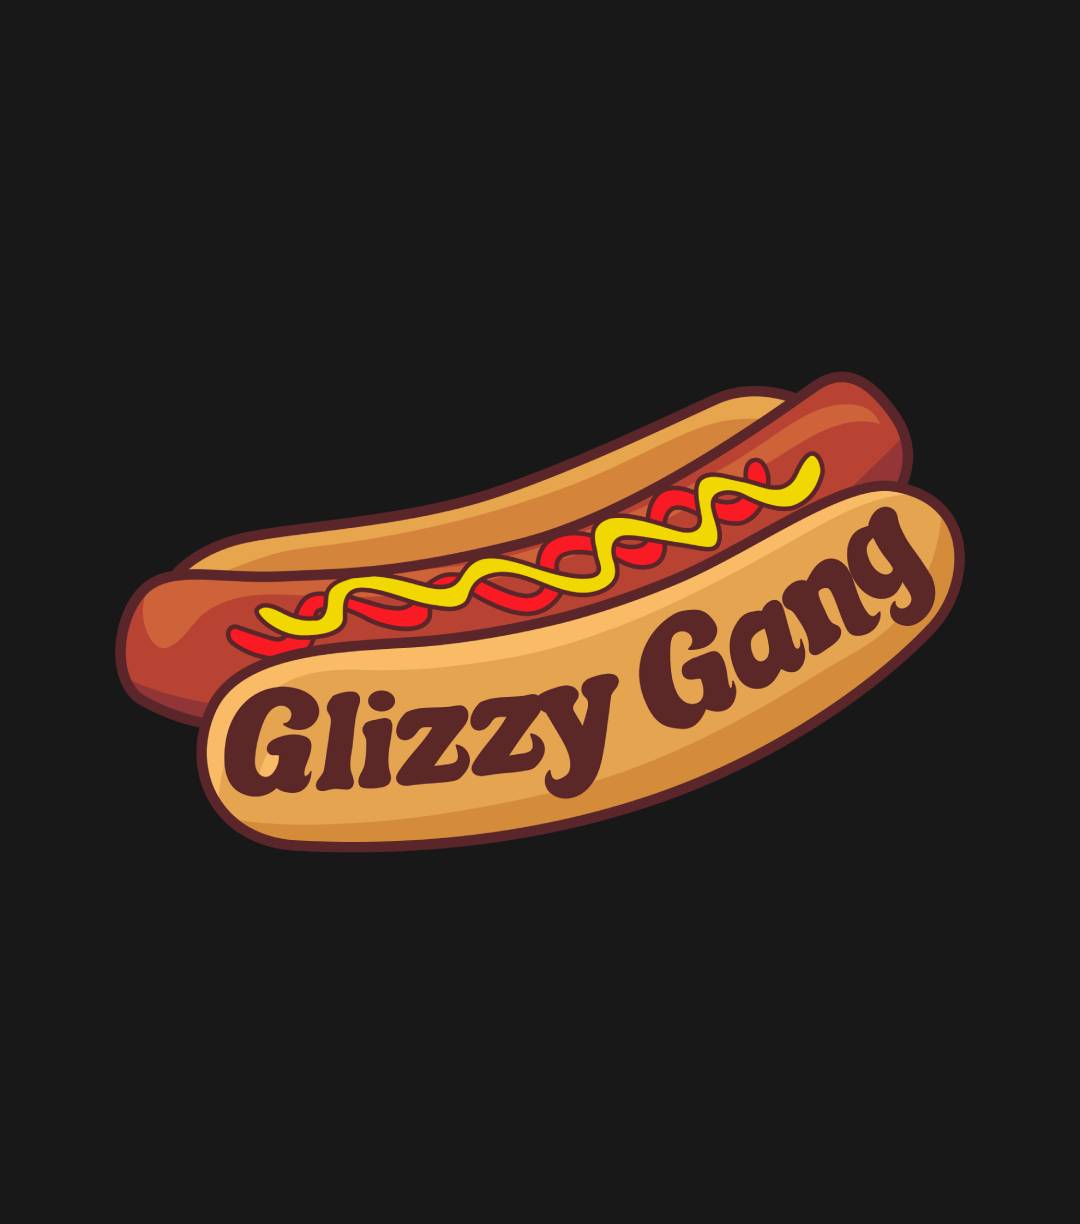 Glizzy Gang T-Shirt